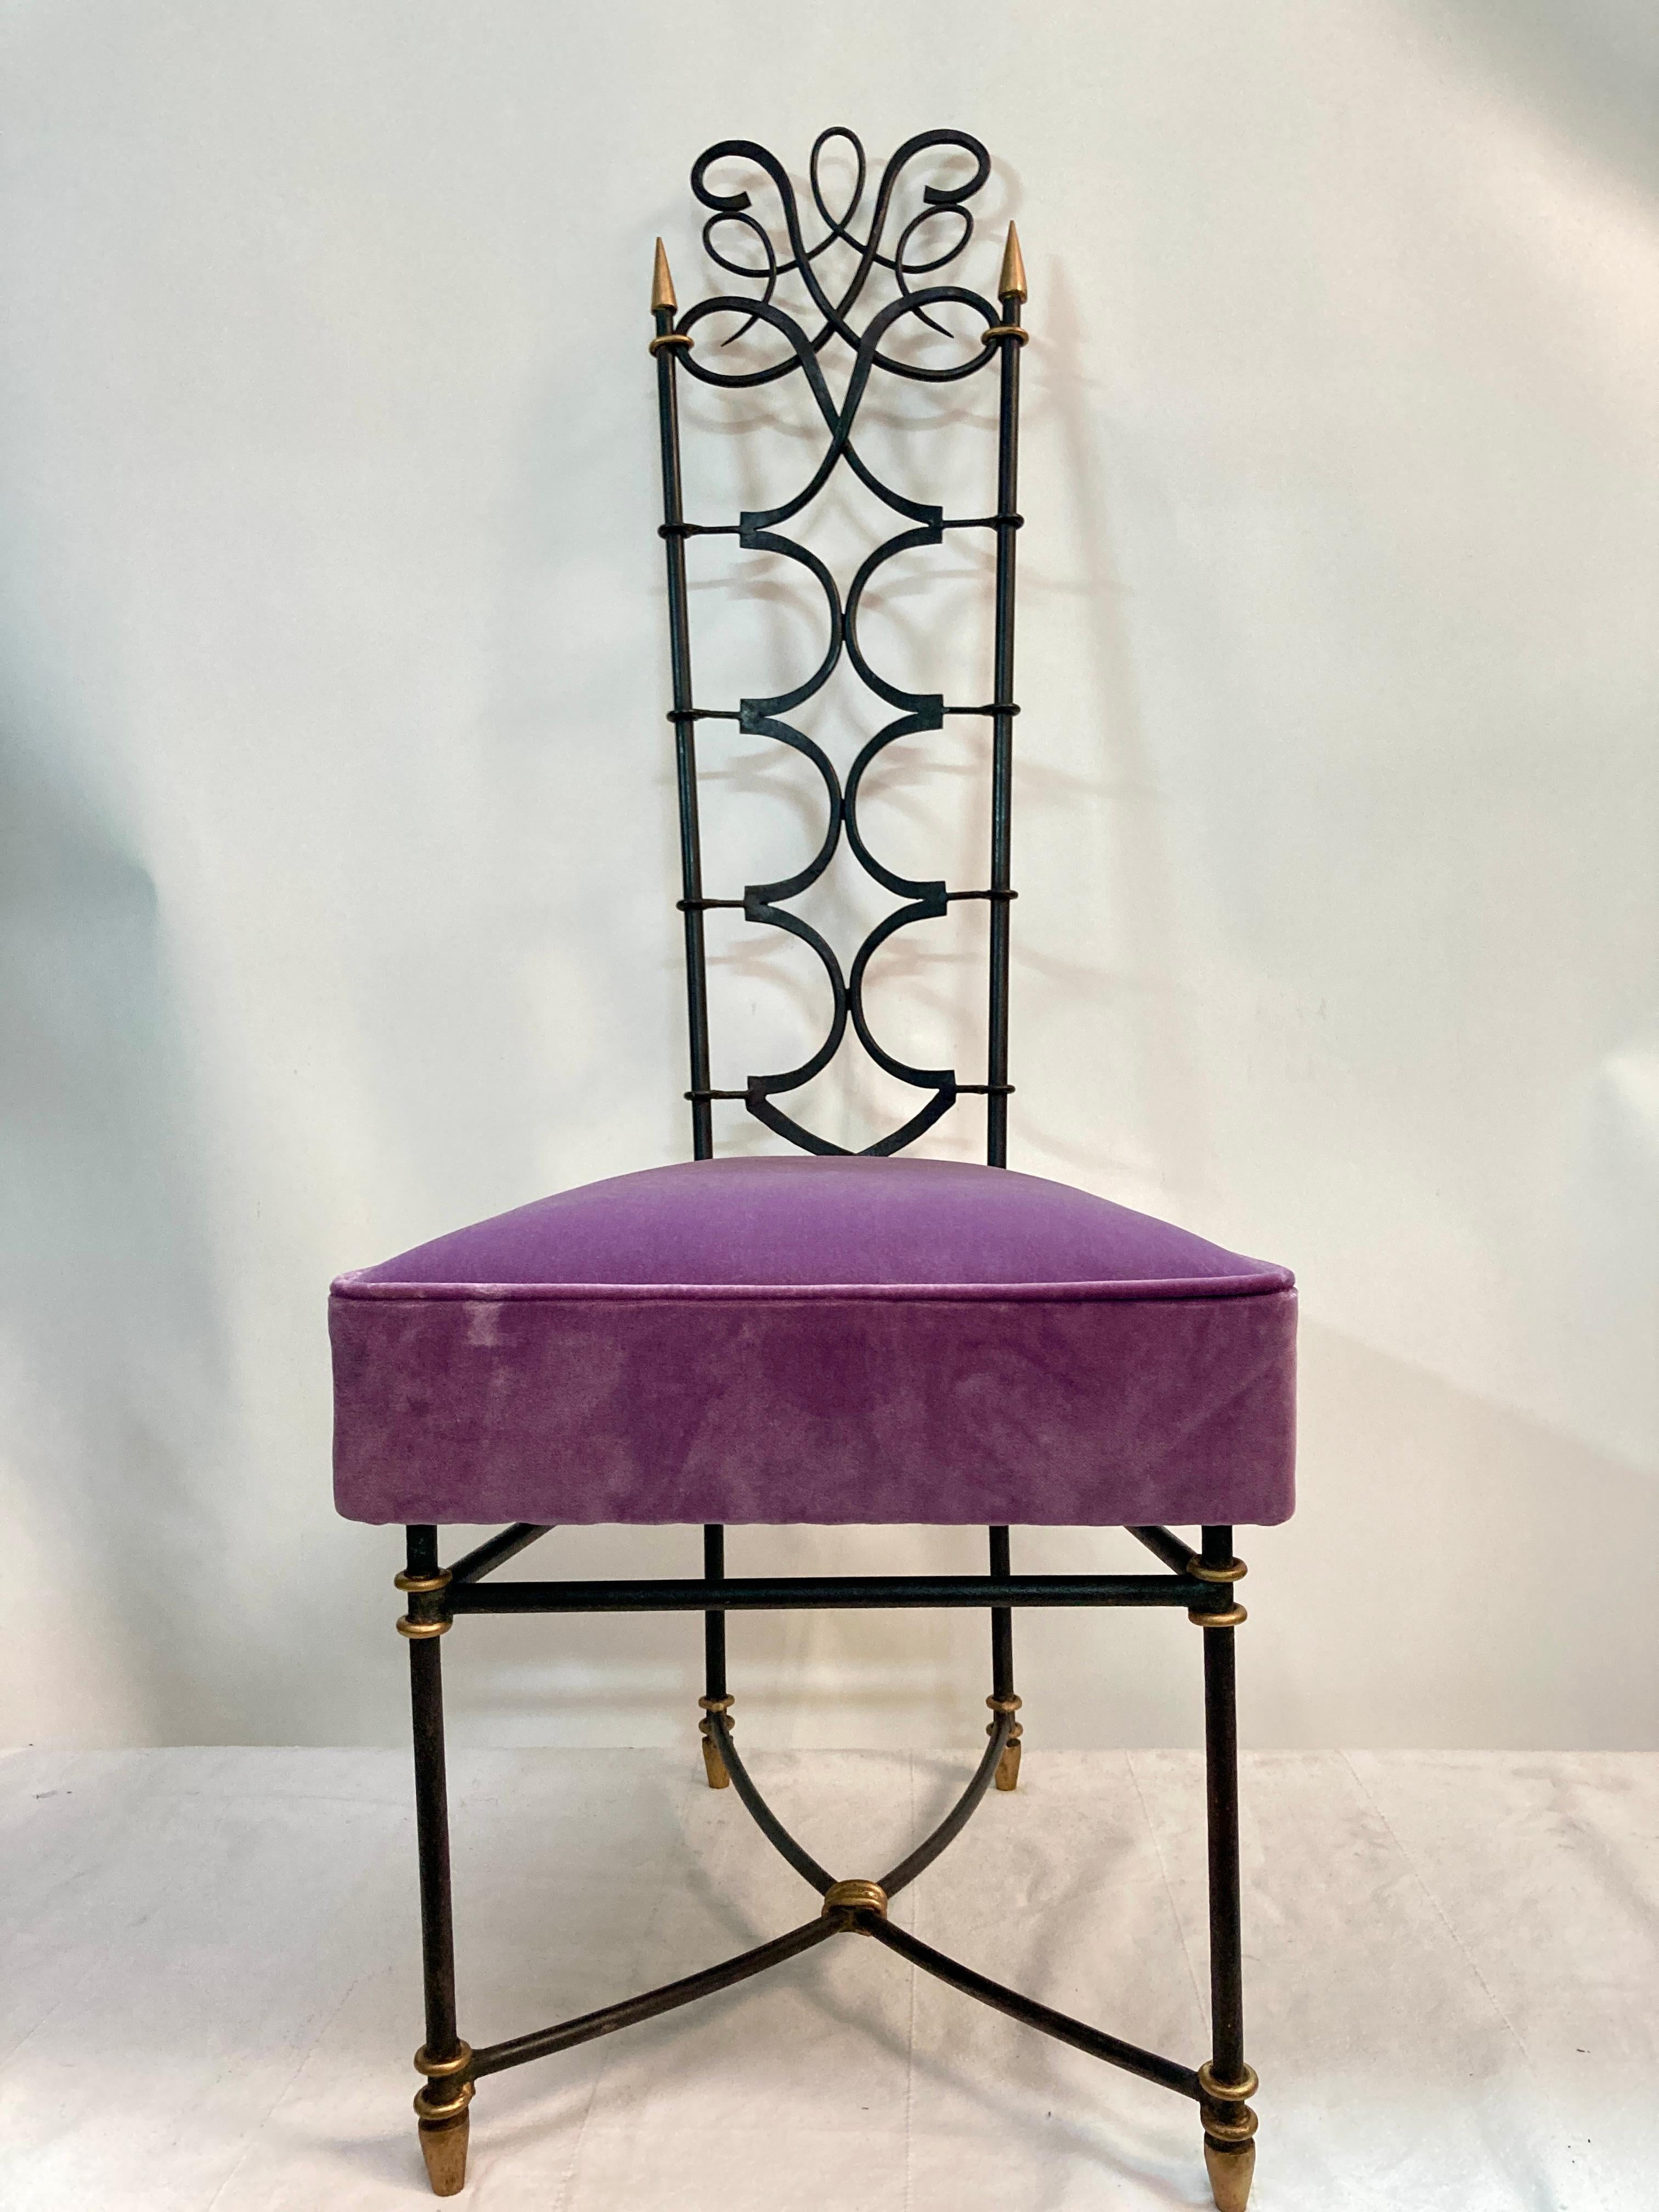 Paire de chaises hautes en fer forgé très inhabituelles
tapissé de velours violet
Excellent état
France